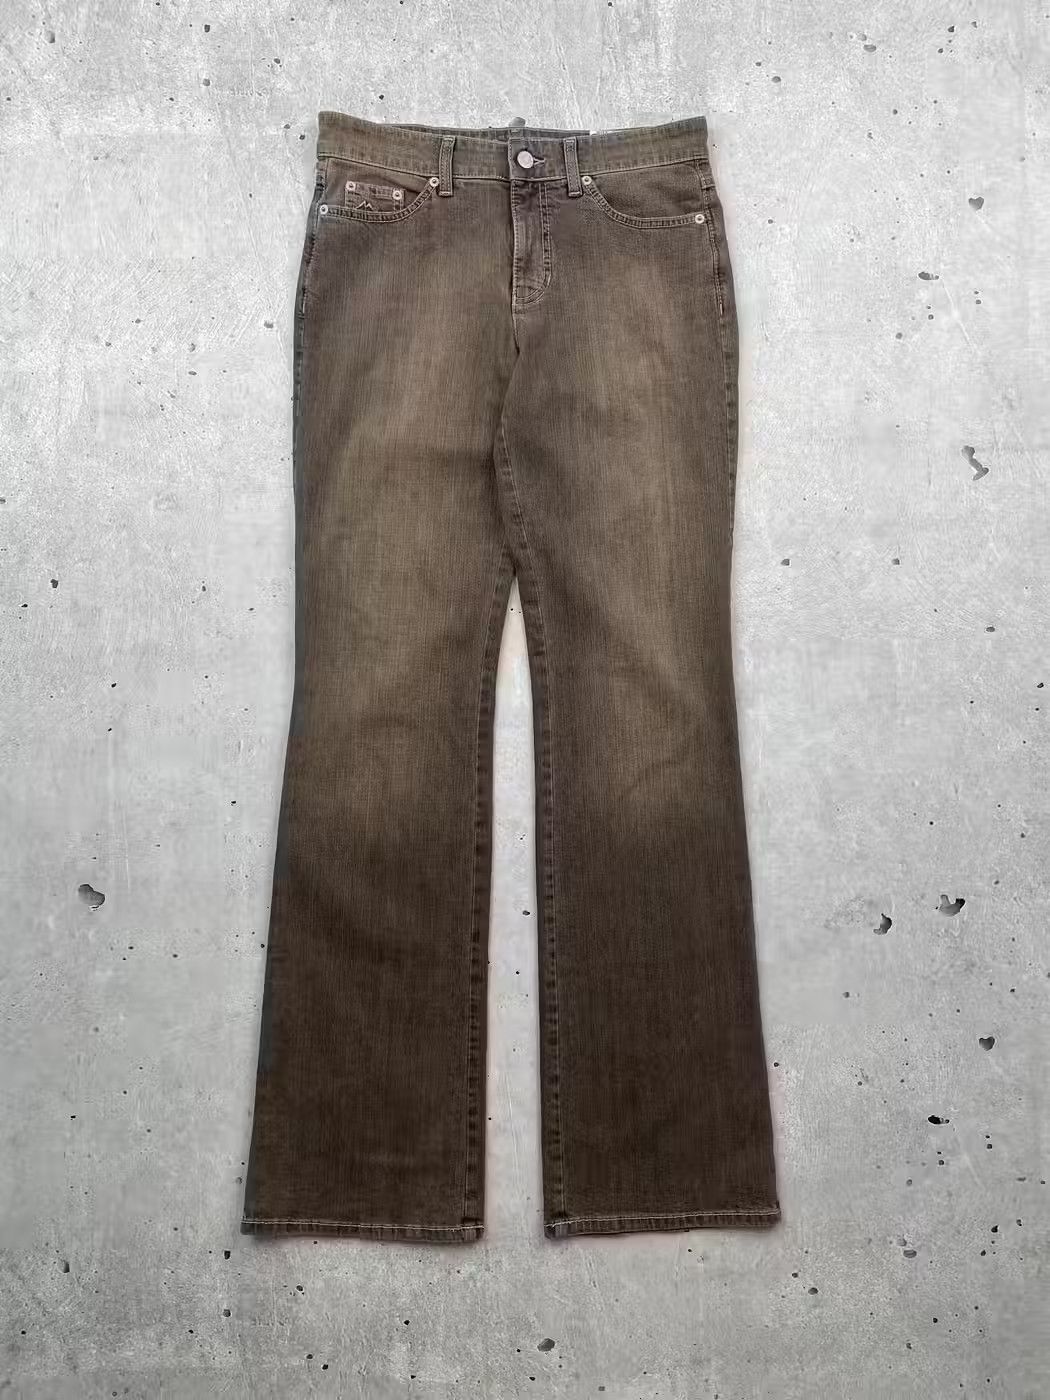 Vintage Vintage Light Flared Jeans | Grailed